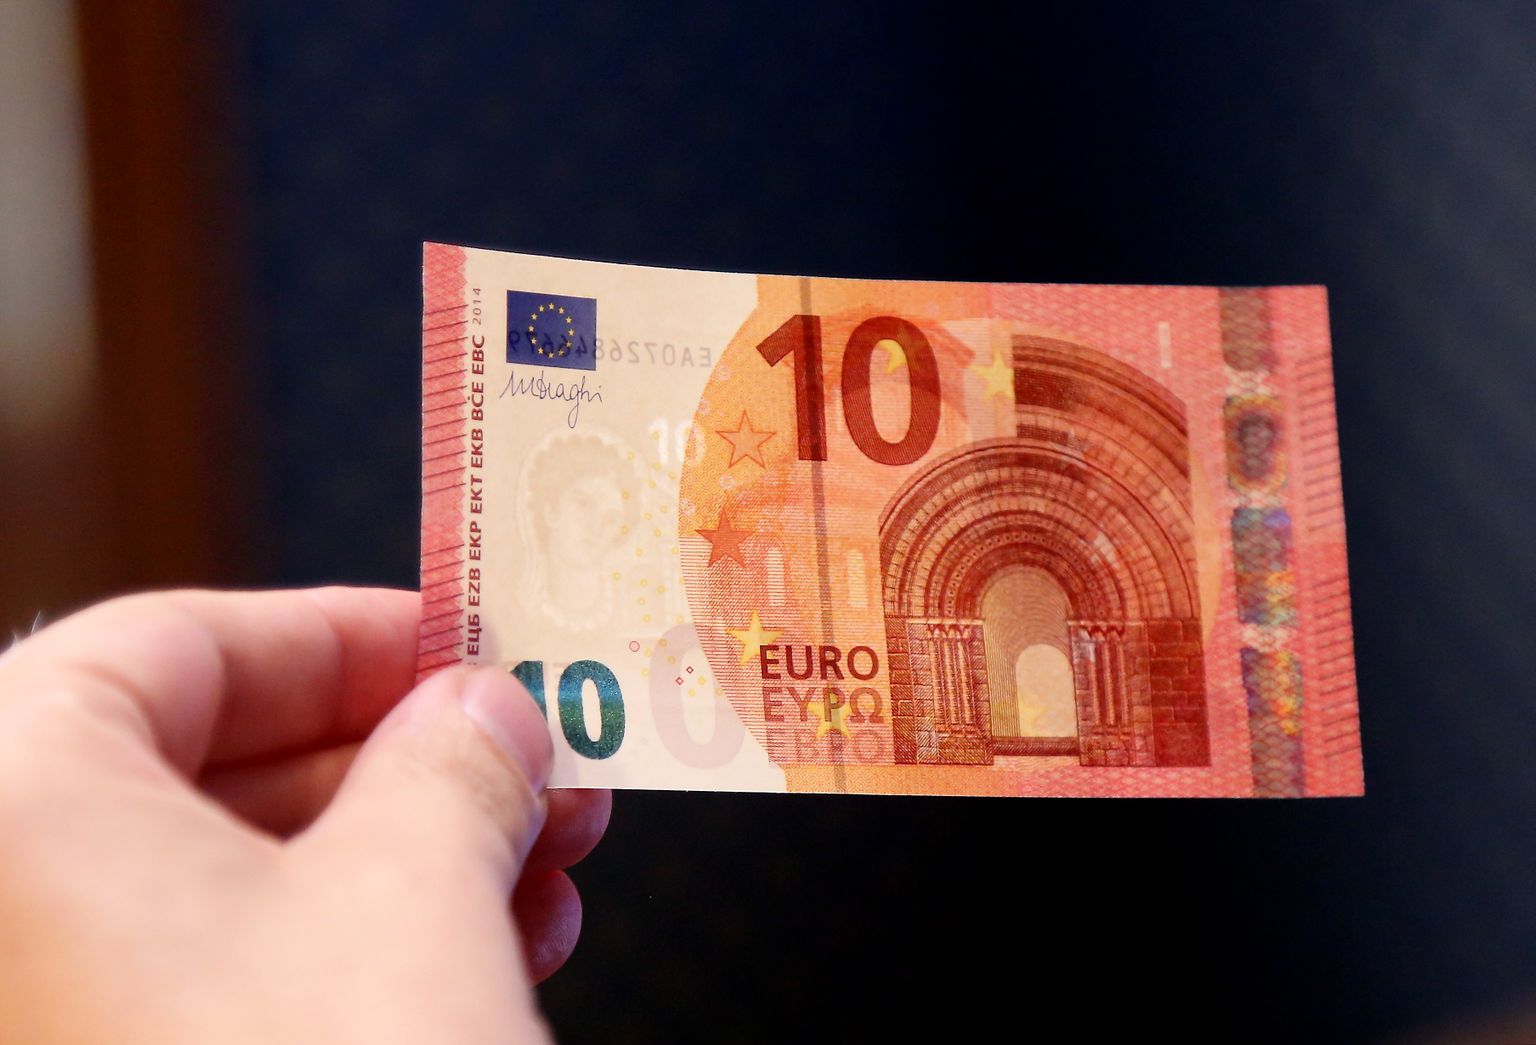 10 eiro banknote.